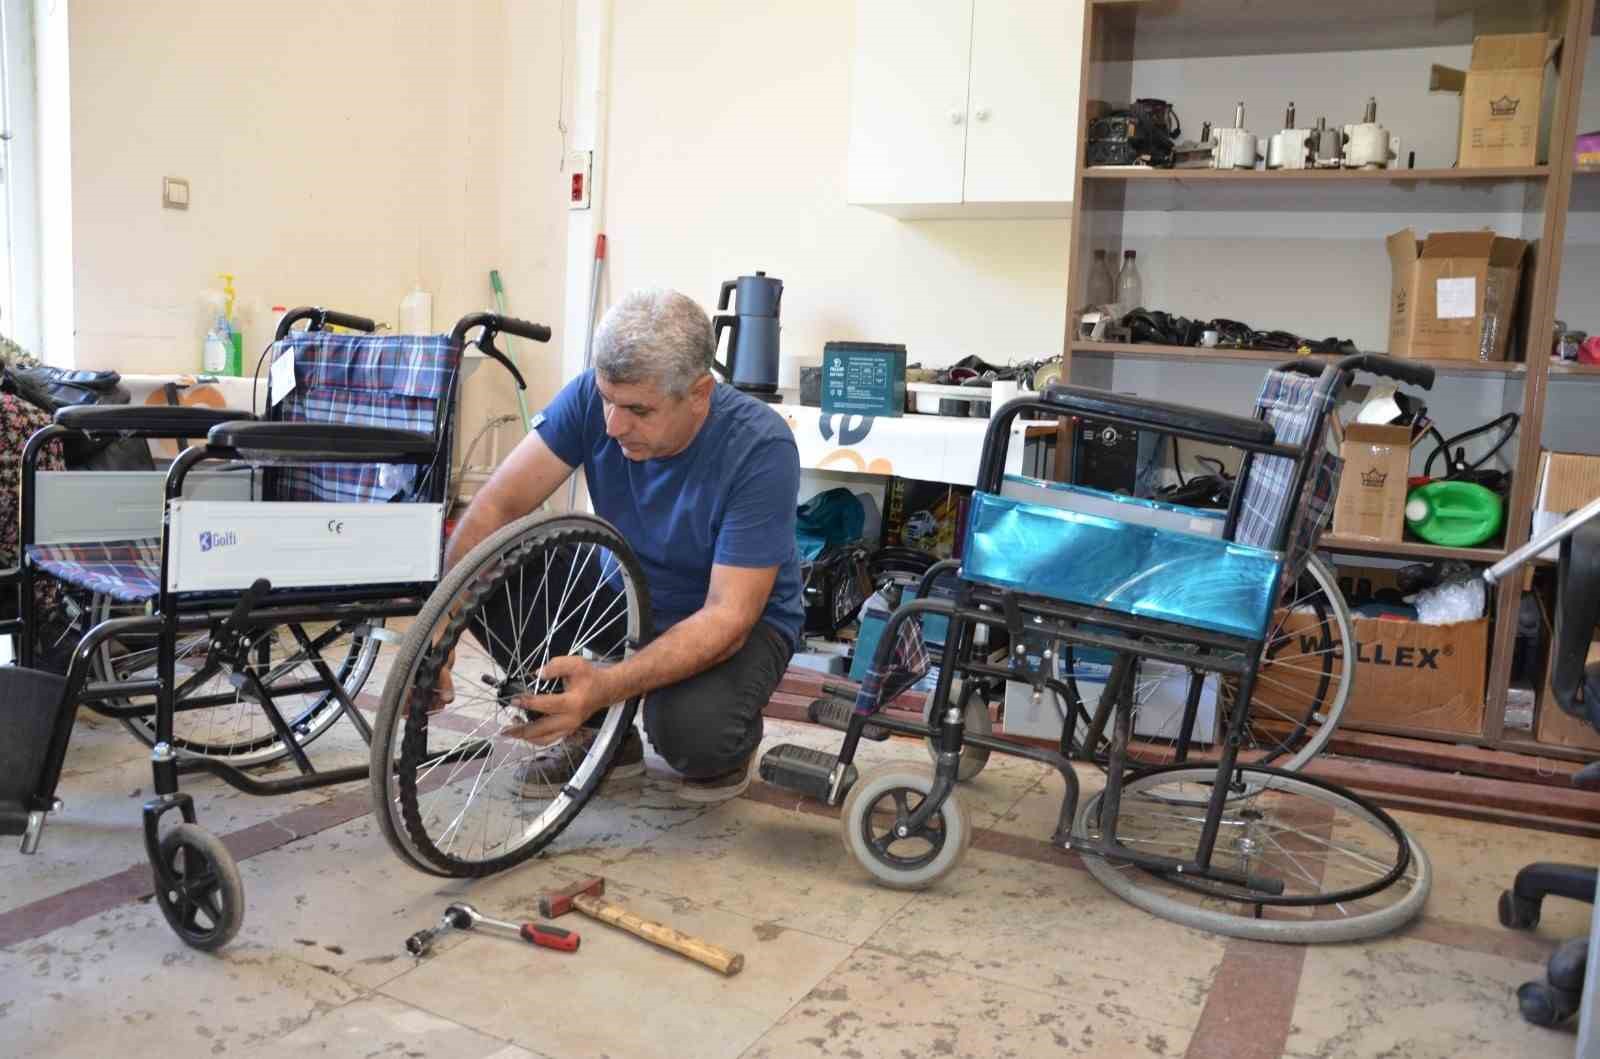 Diyarbakır’da engelli bireylerin kullandığı tekerlekli sandalyeler ücretsiz tamir ediliyor